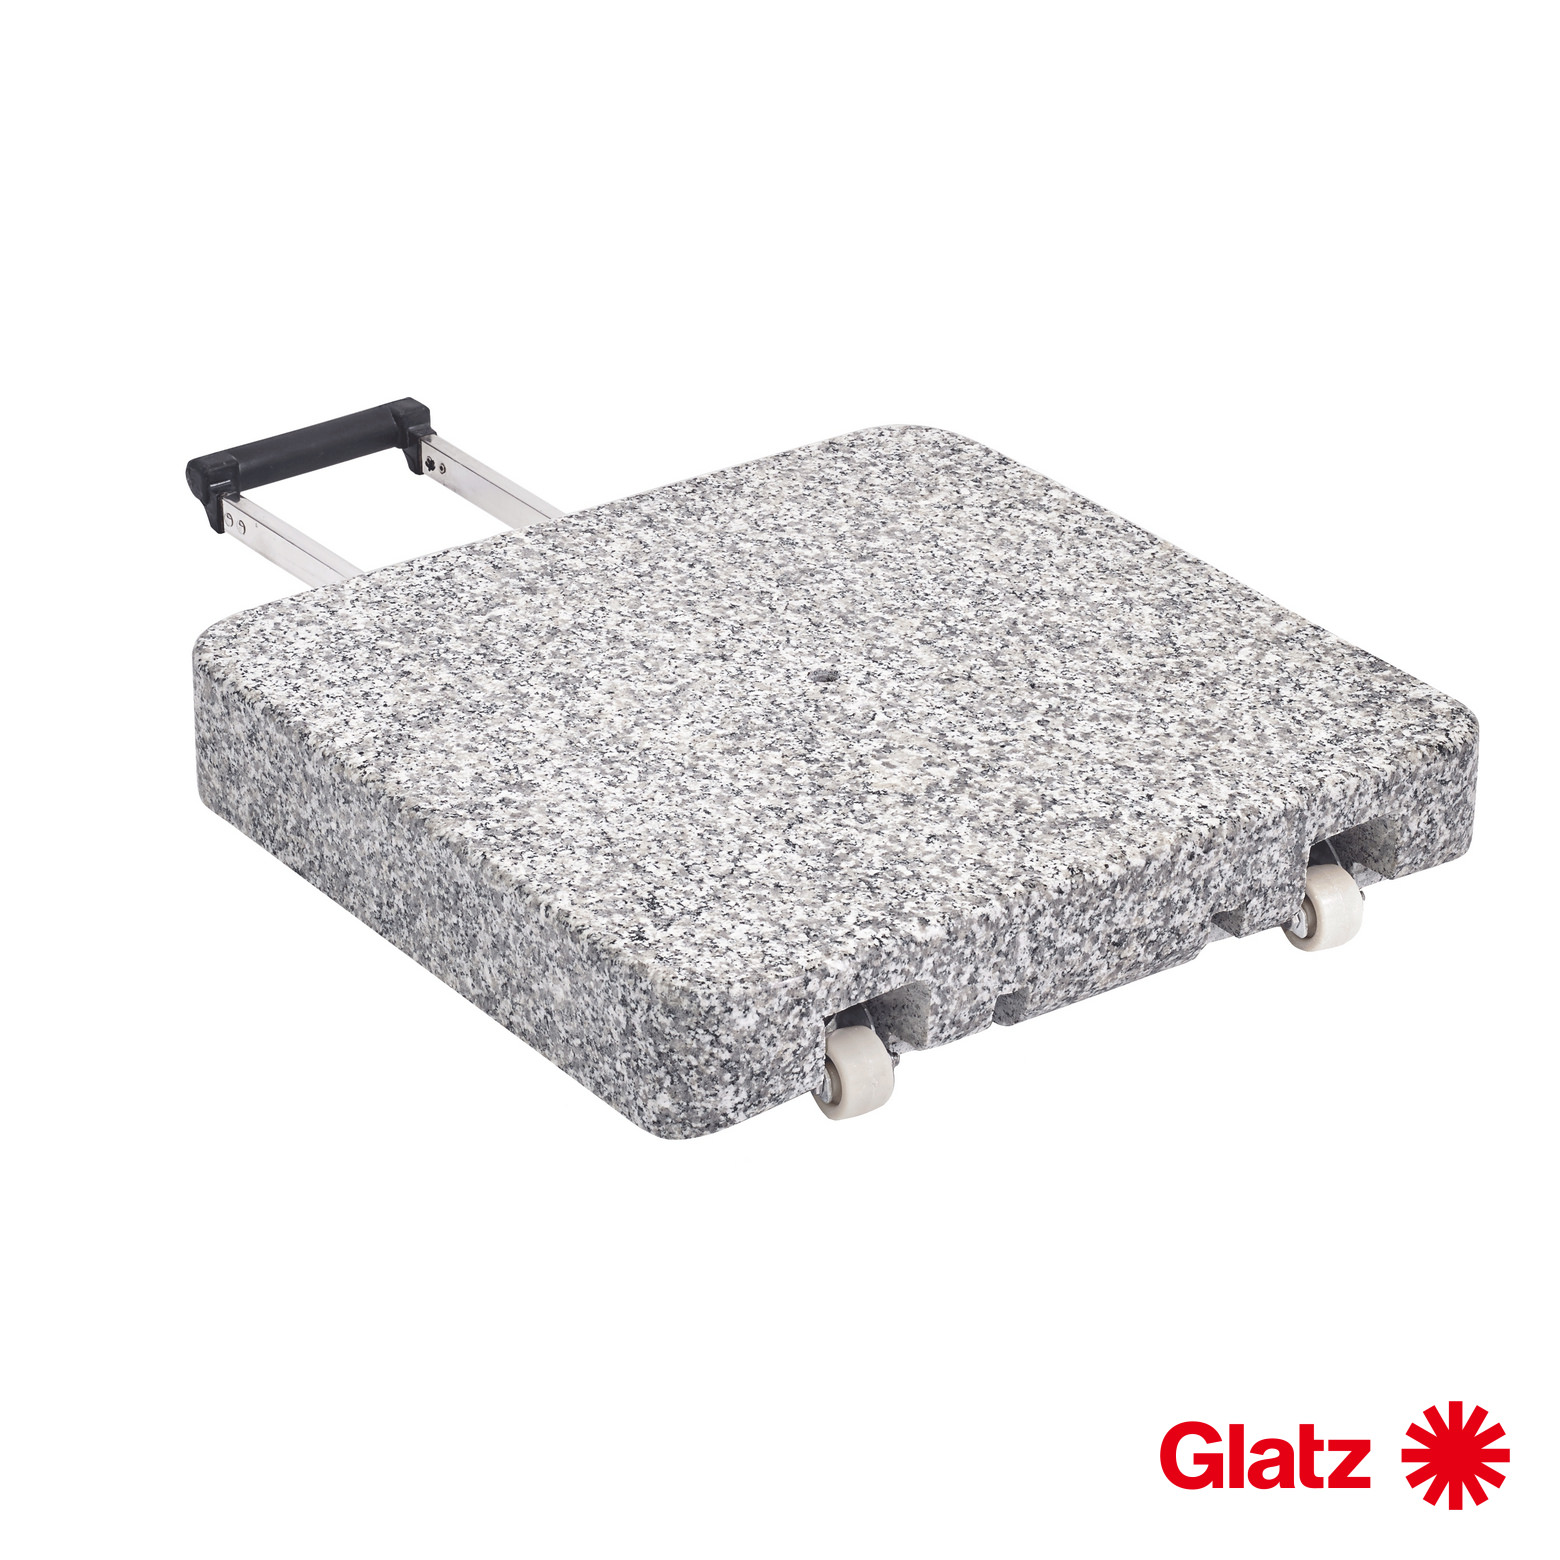 Glatz Granitsockel Z, 40 kg, 45x45x8 cm, Naturstein, mit Rollen und ausziehbarem Handgriff